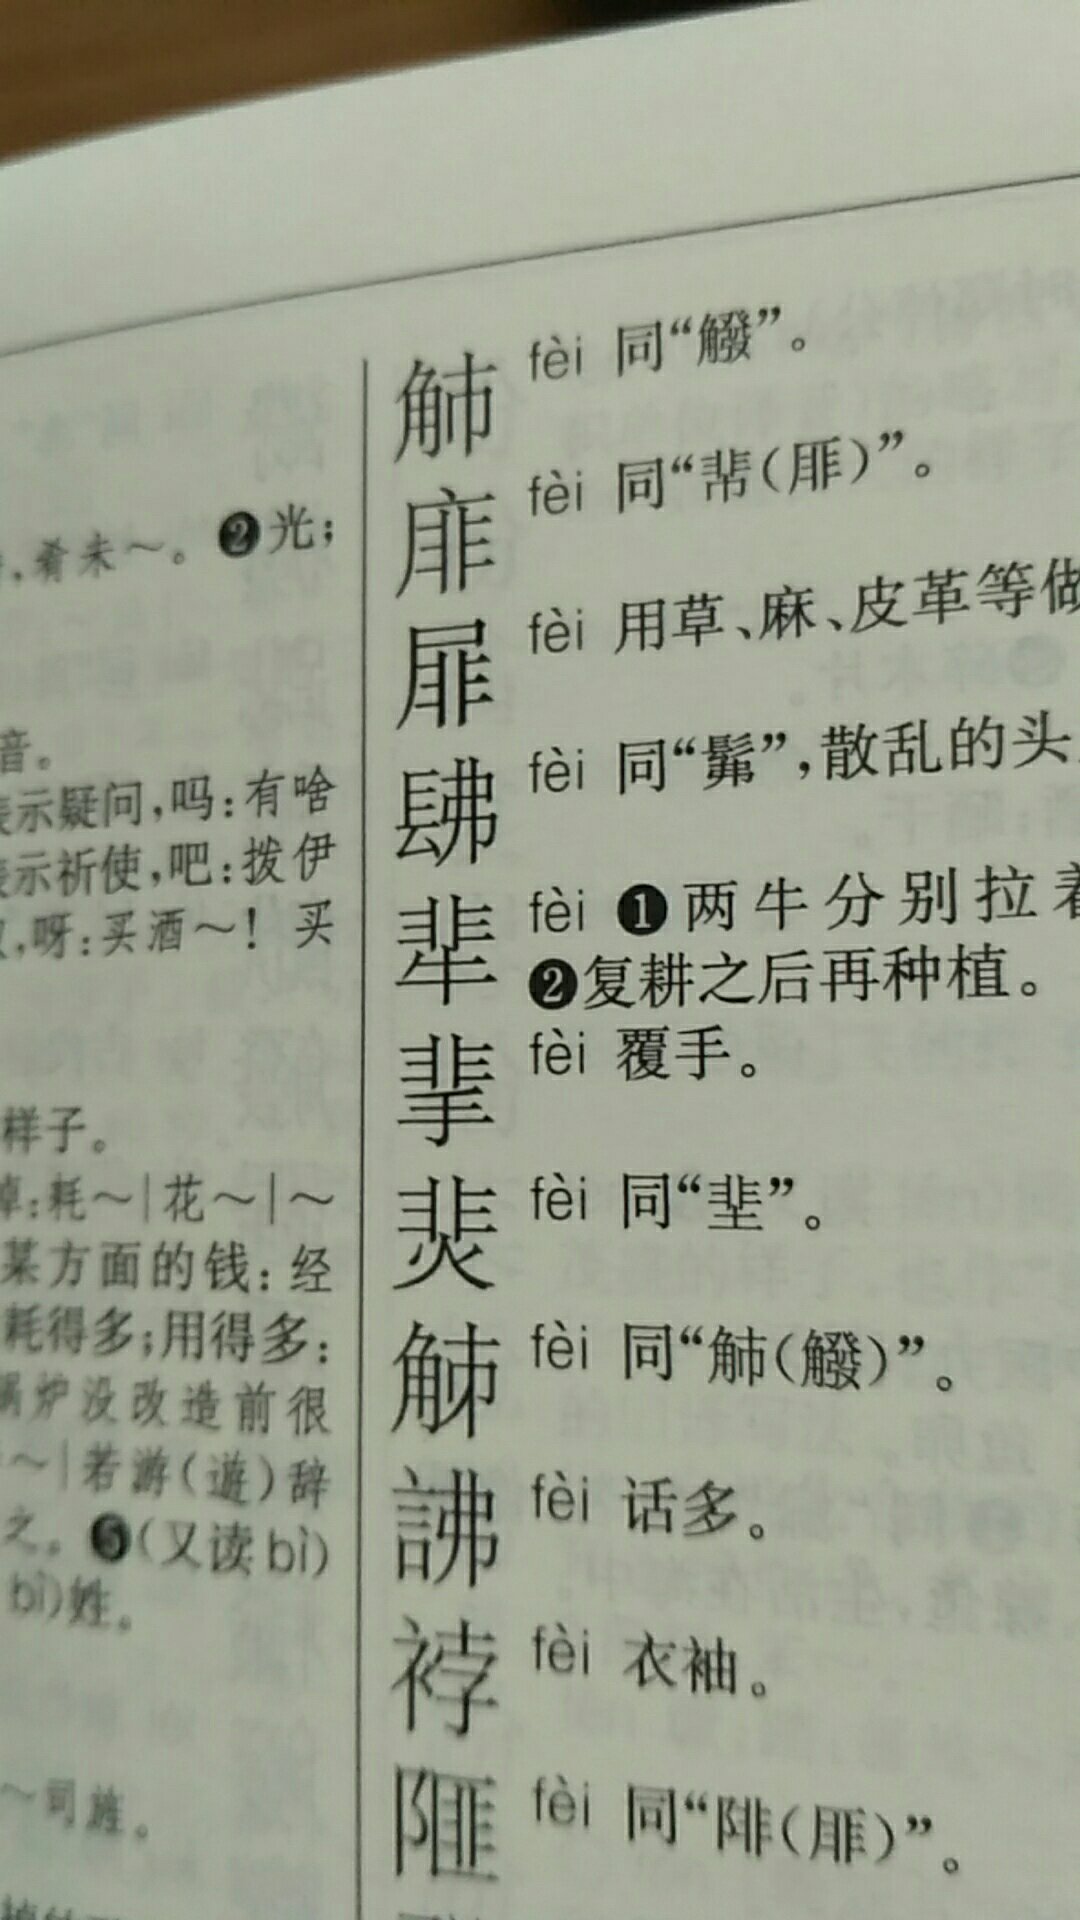 买了《中华大字典》拼音序本和部首序本，初步看过，非常满意。对阅读古籍图书，帮助极大。昨晚下单，今天上午拿到书。很高兴。感谢店主，感谢物流。